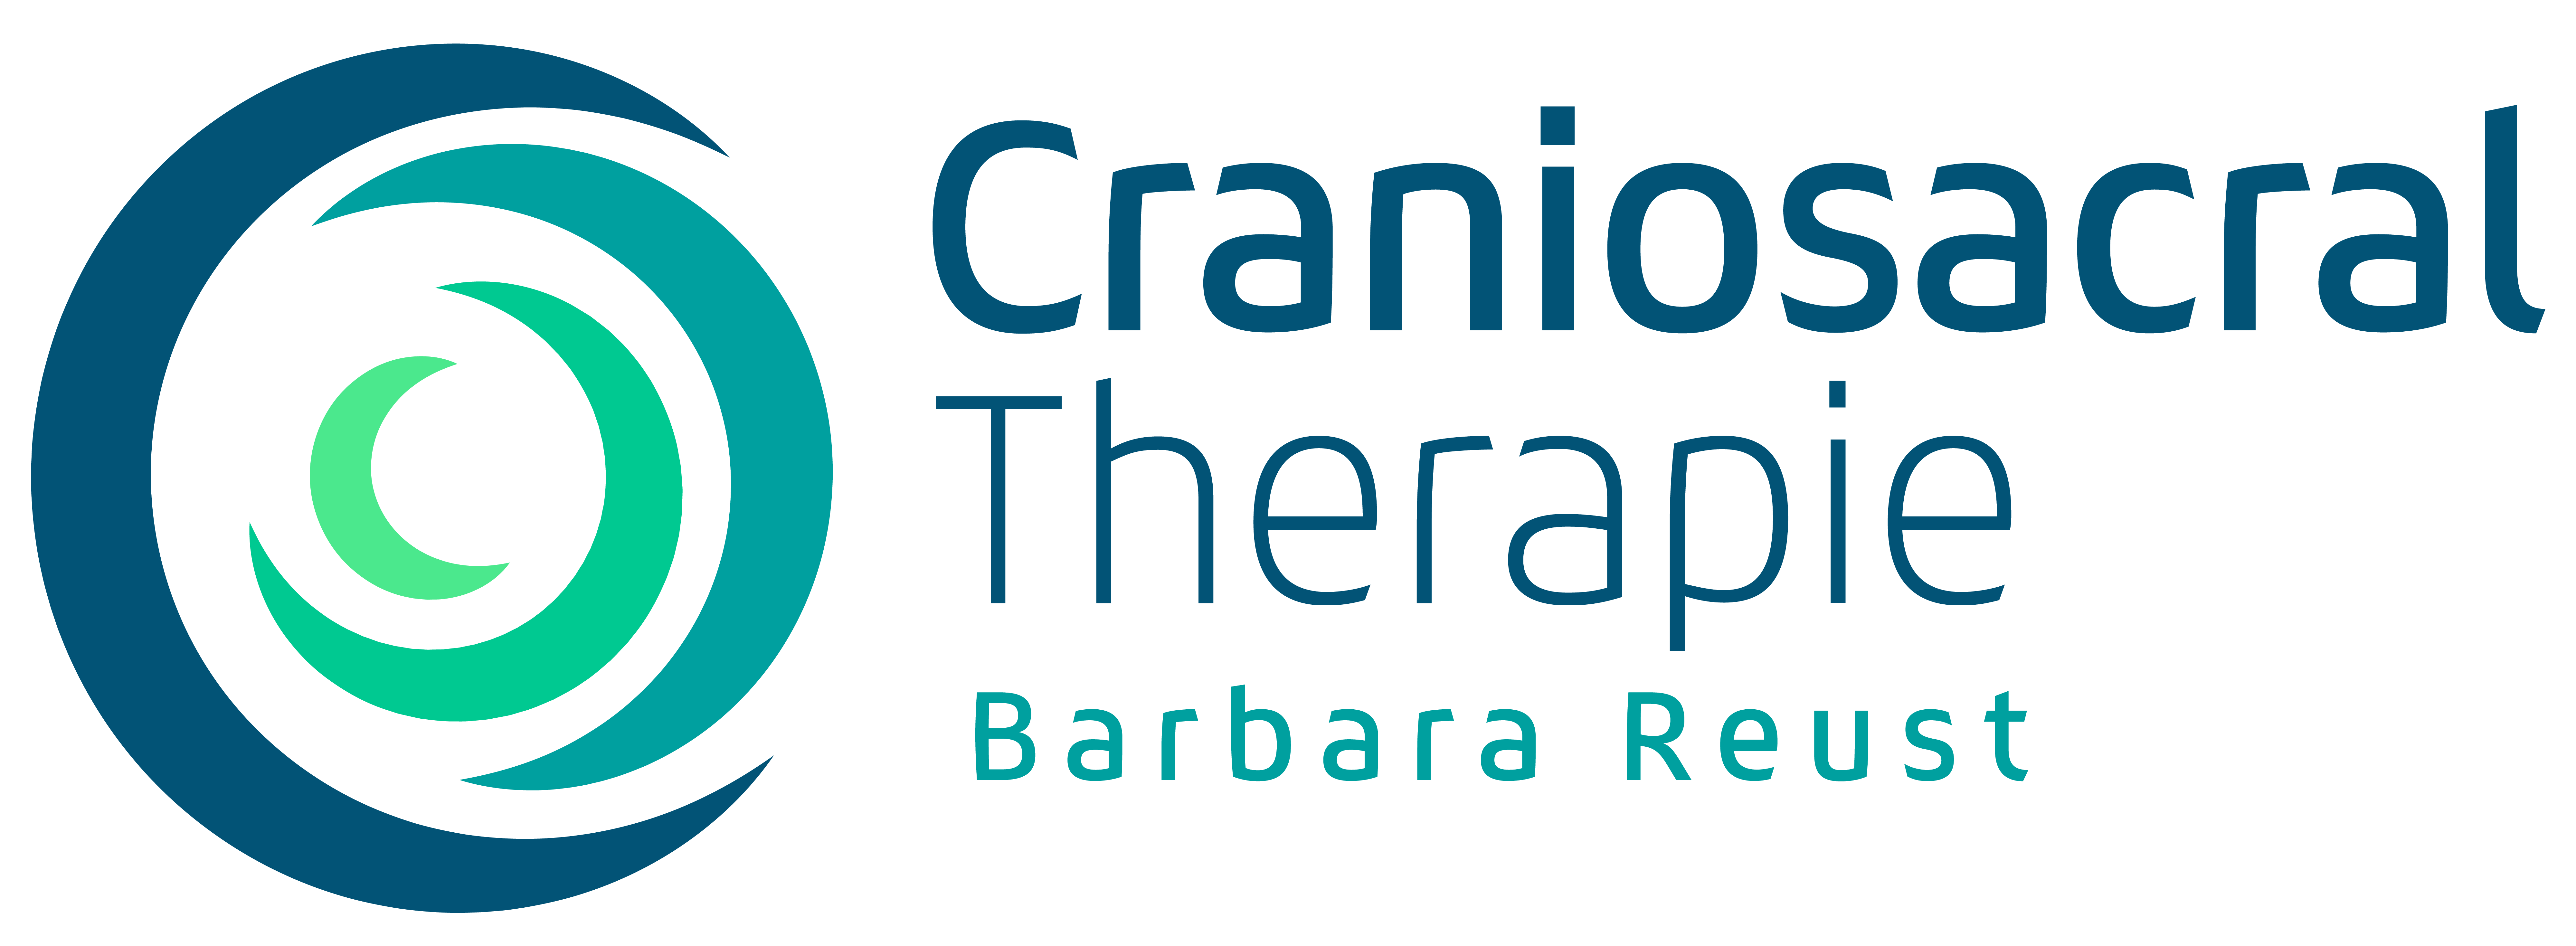 Craniosacral Therapie Barbara Reust Logo